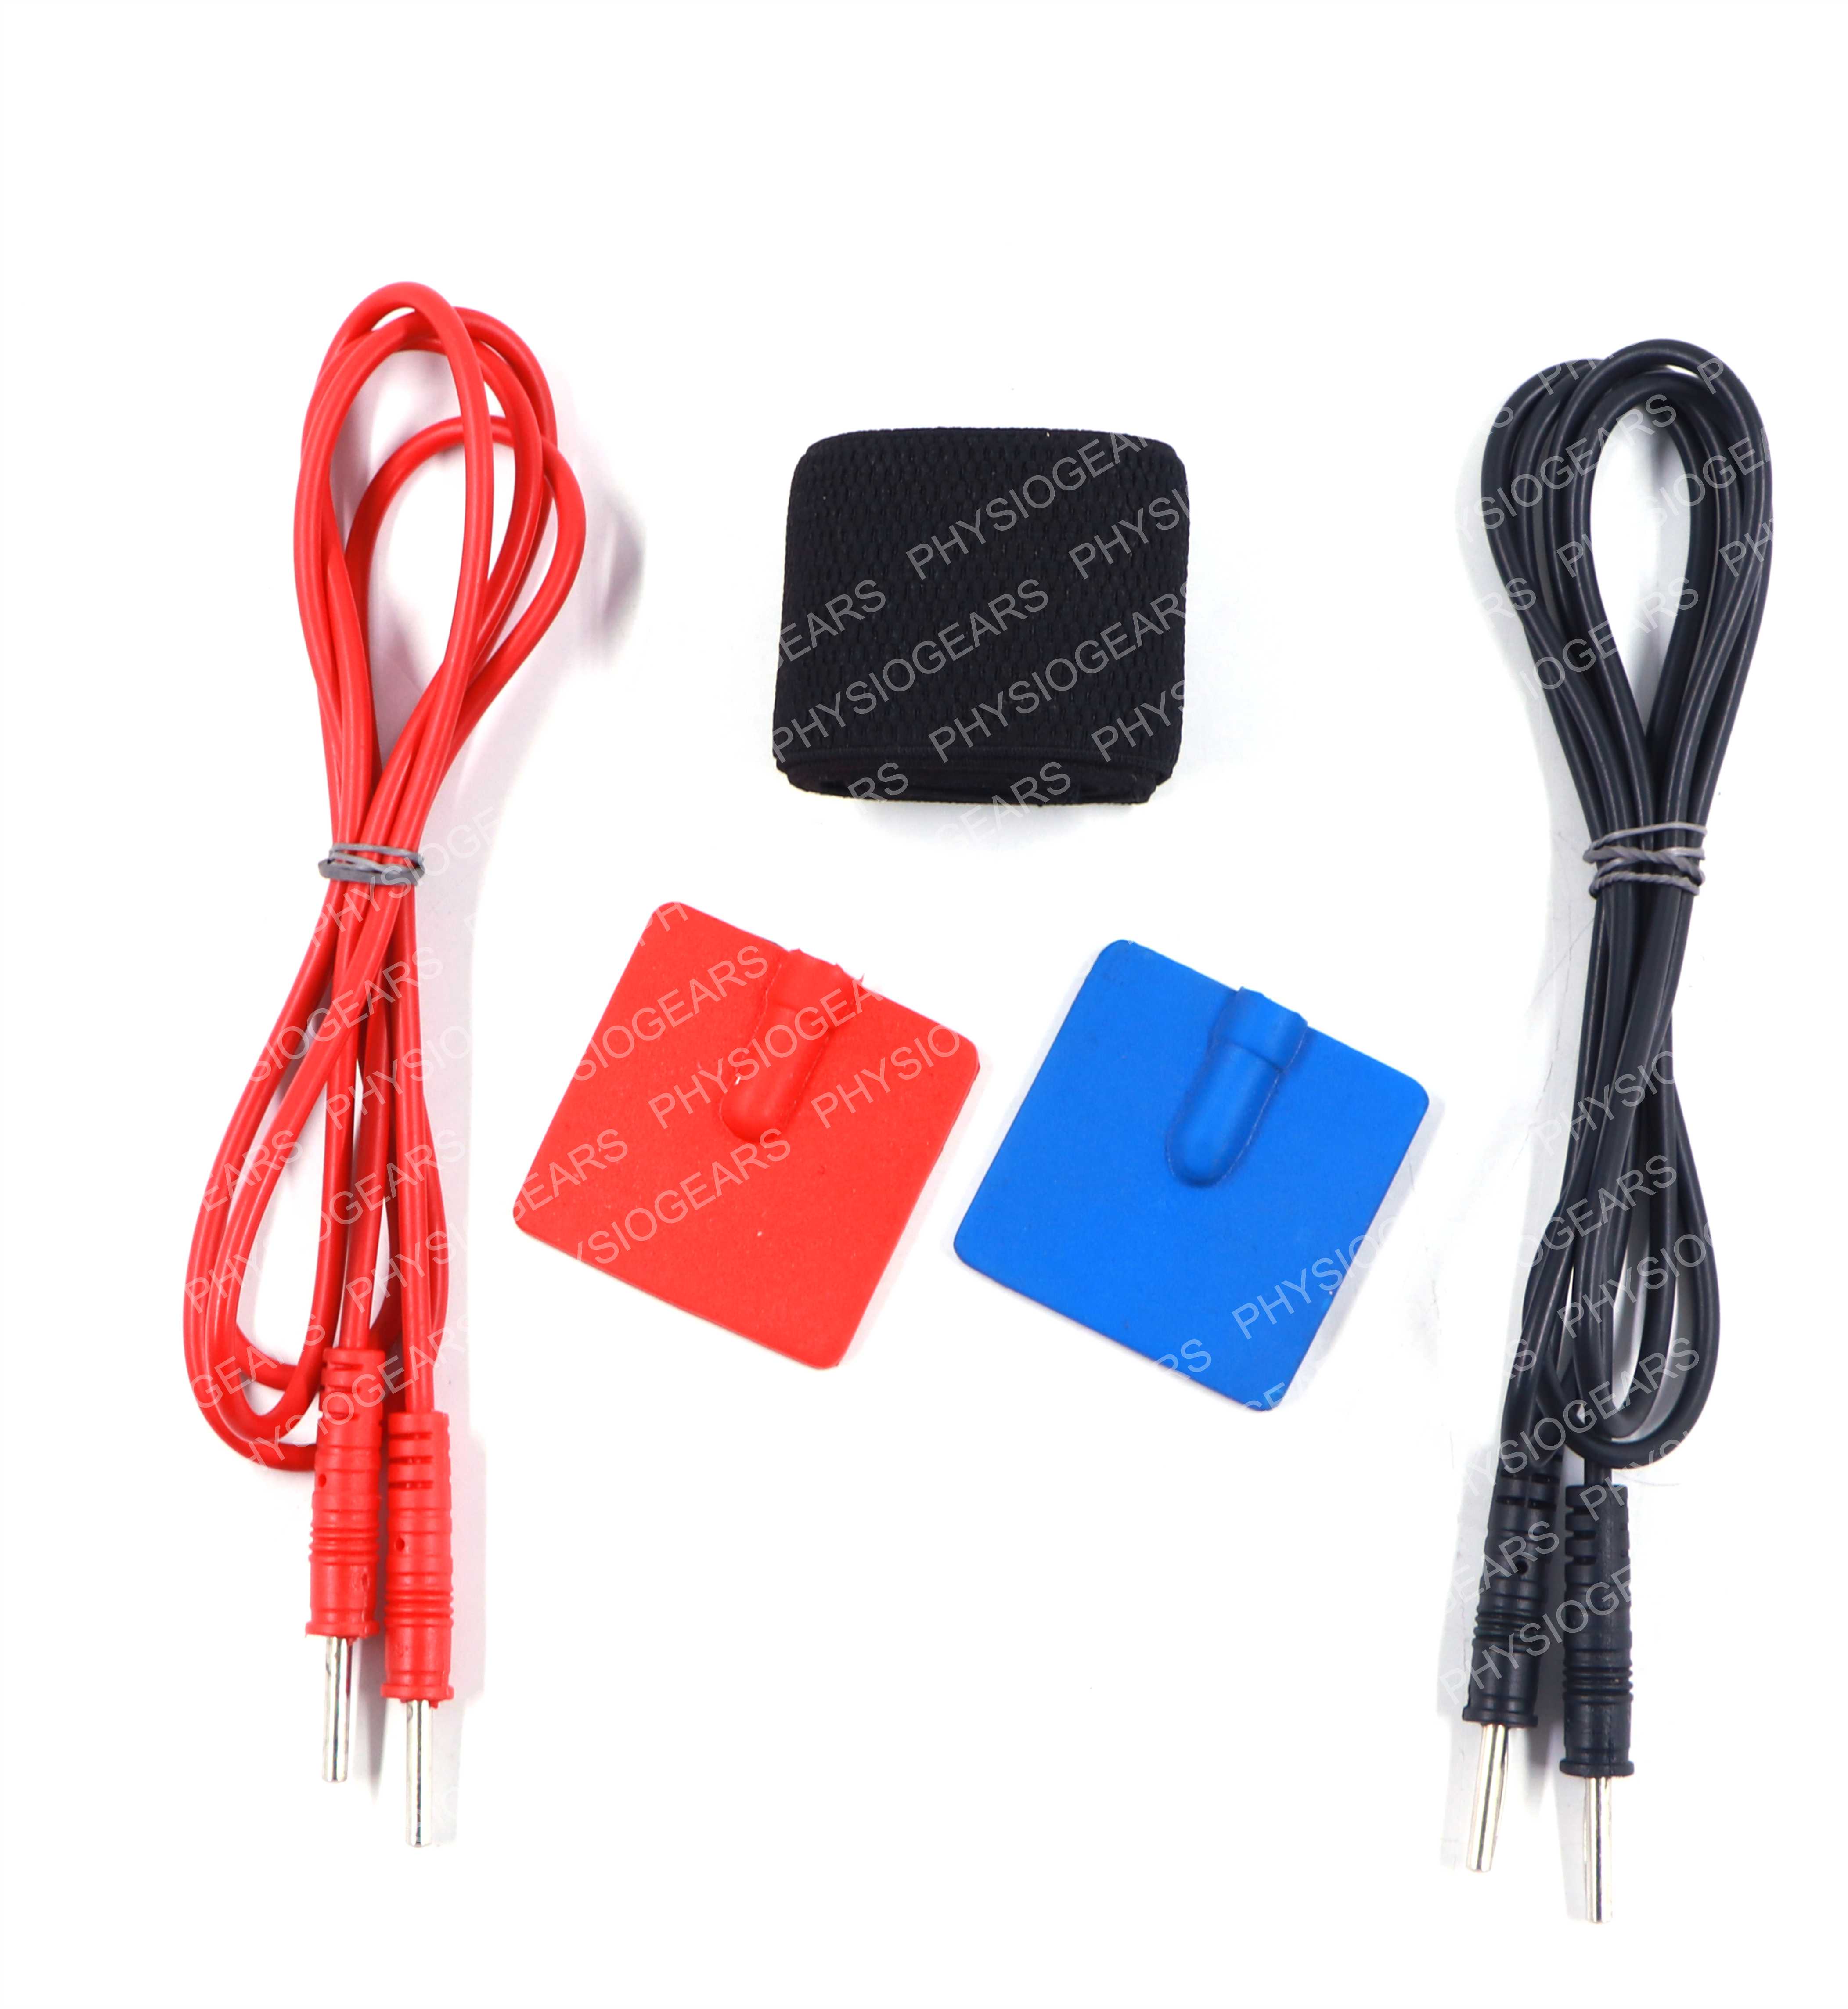 ms 2 pin kit (2pin wire,2 pads,1 valcro)